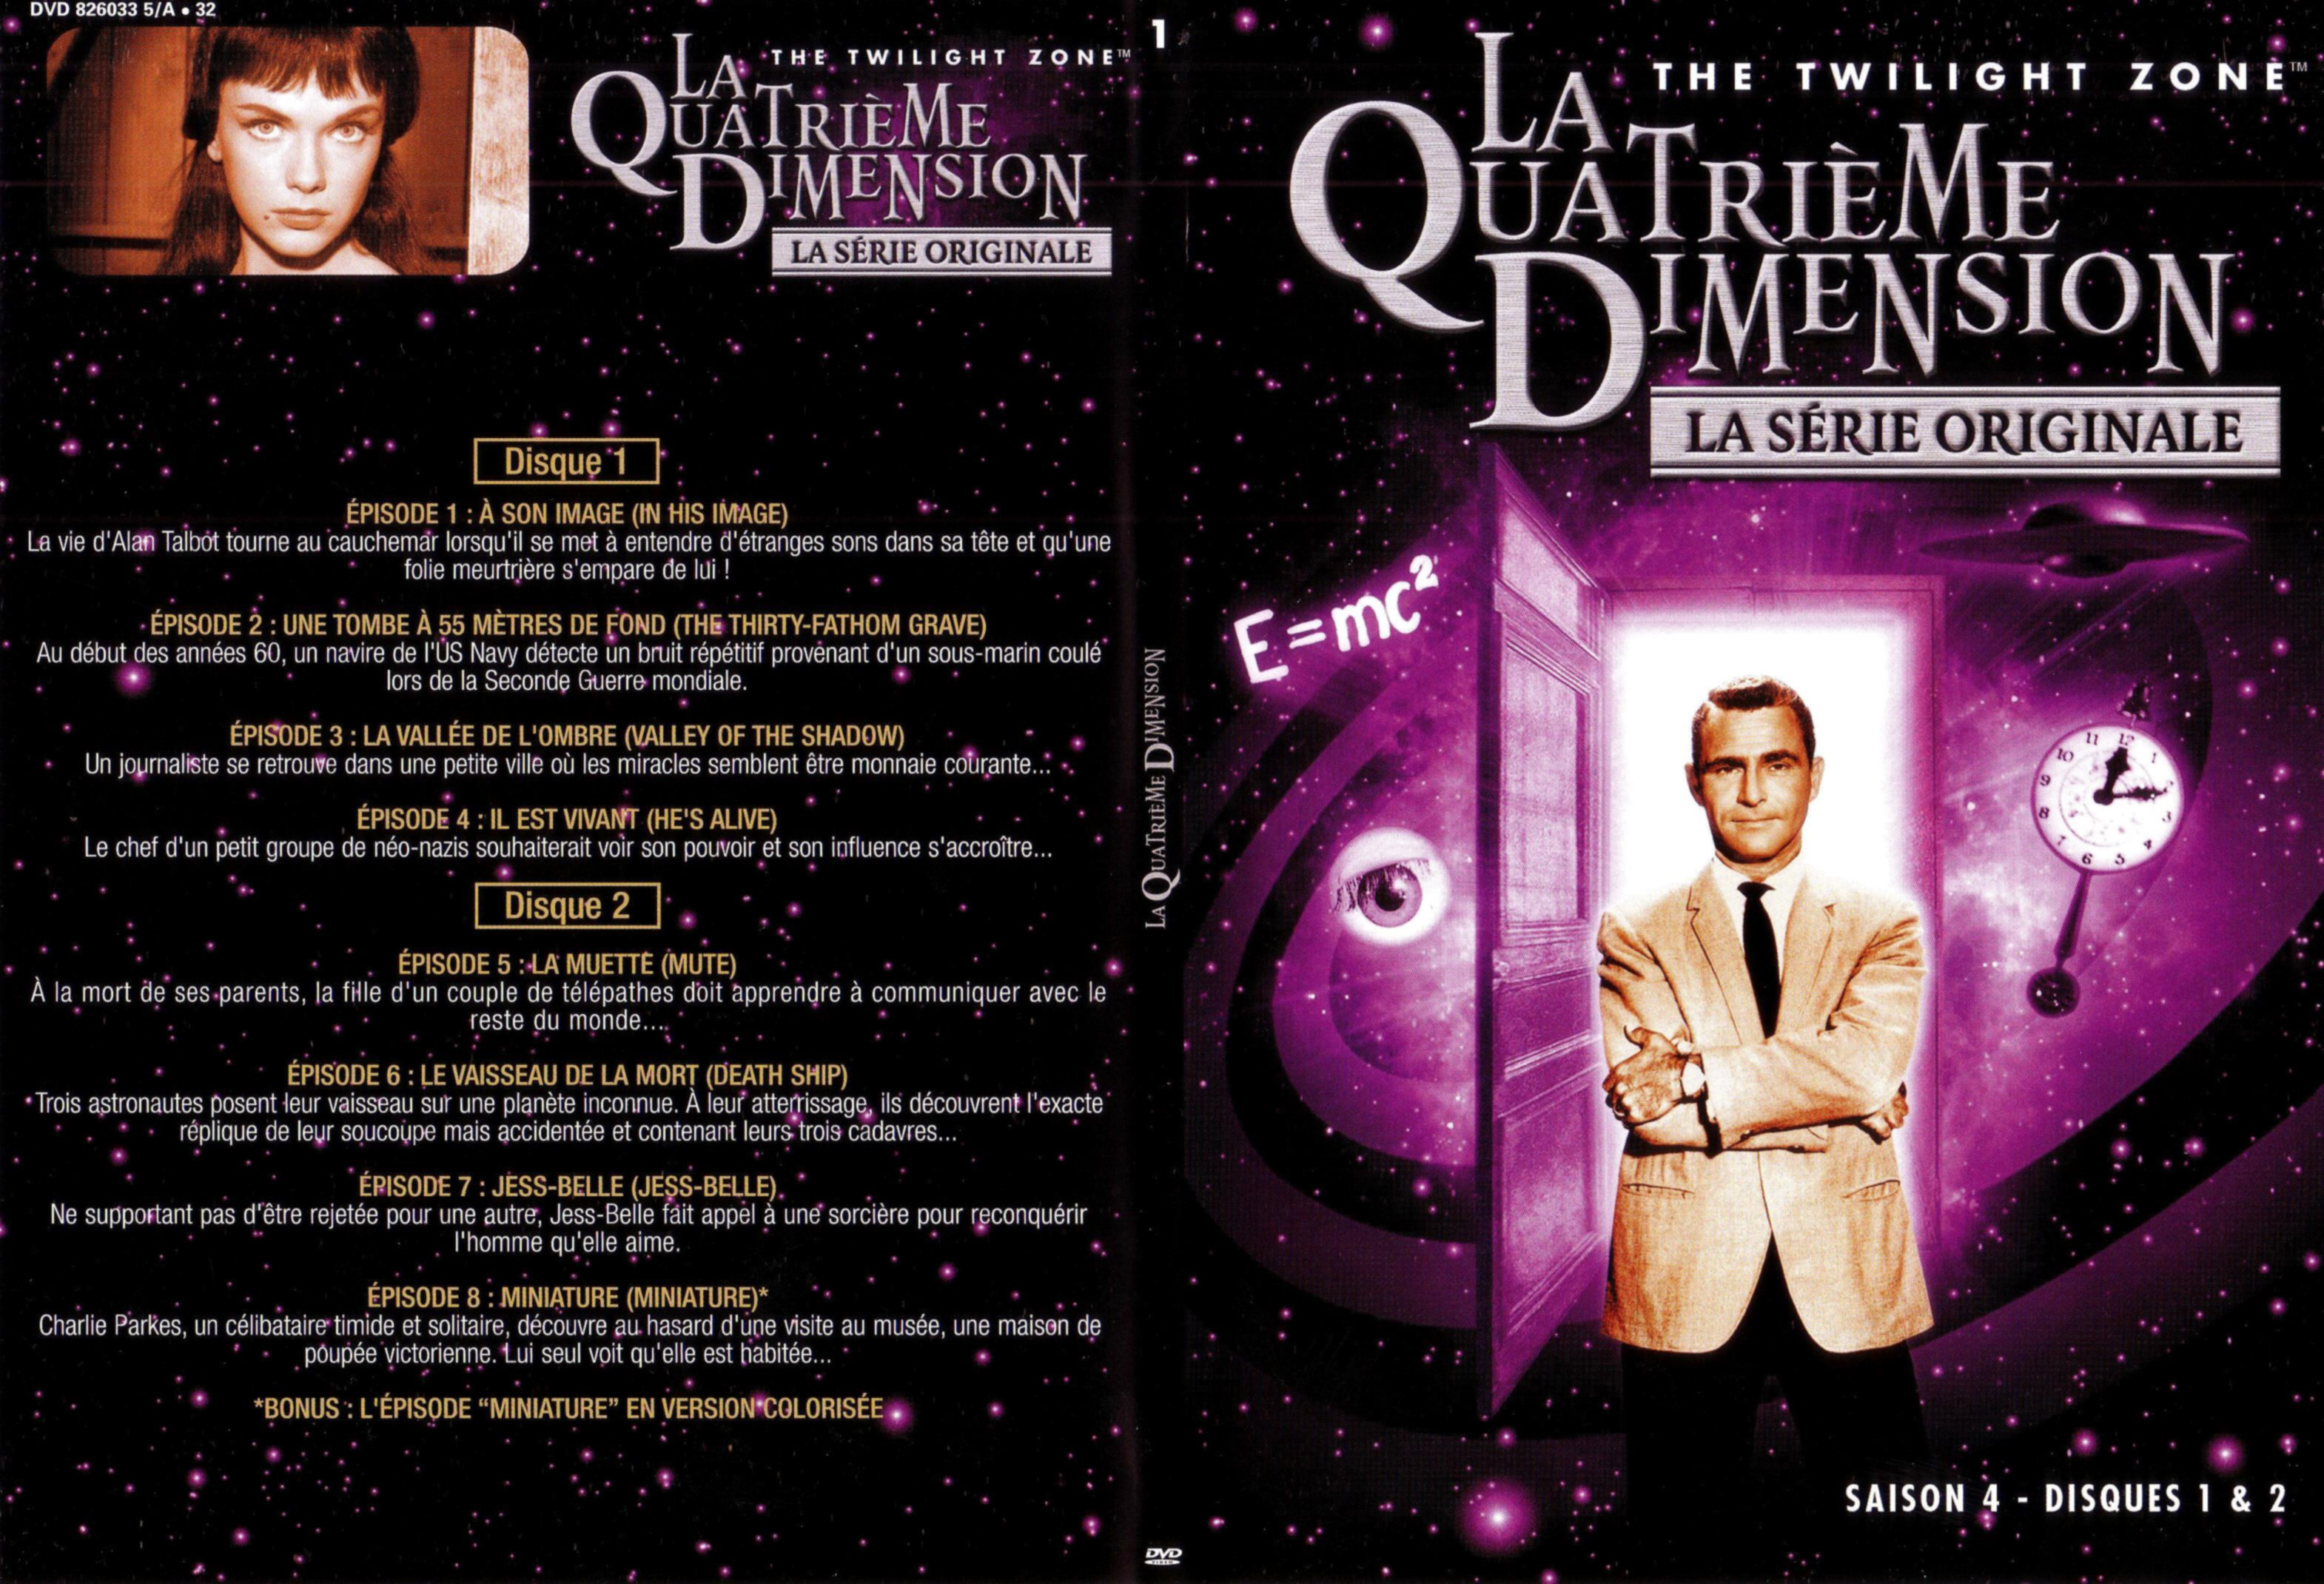 Jaquette DVD La quatrieme dimension saison 4 vol 1